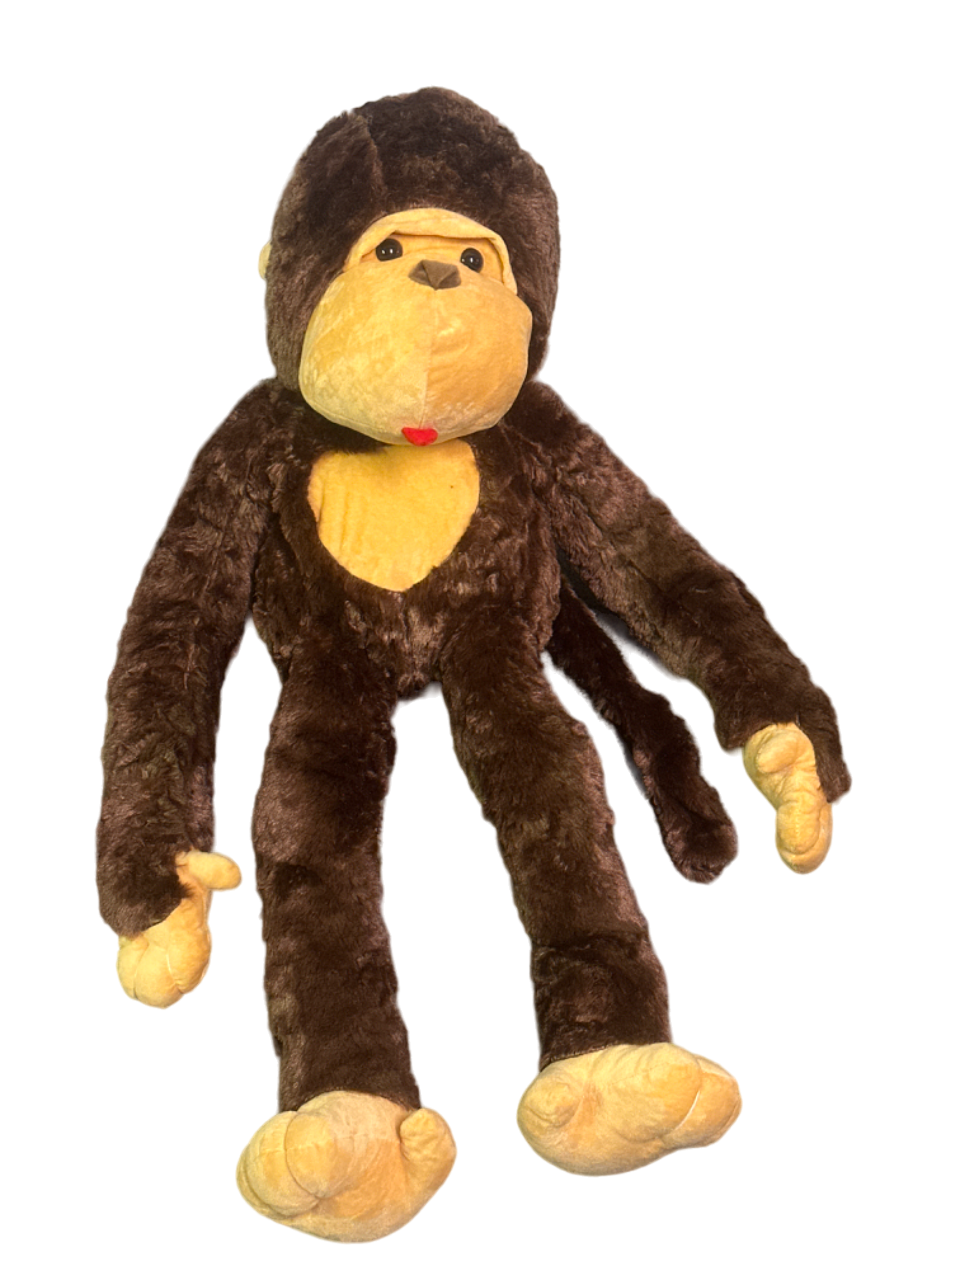 33" Plush Monkey 1 piece